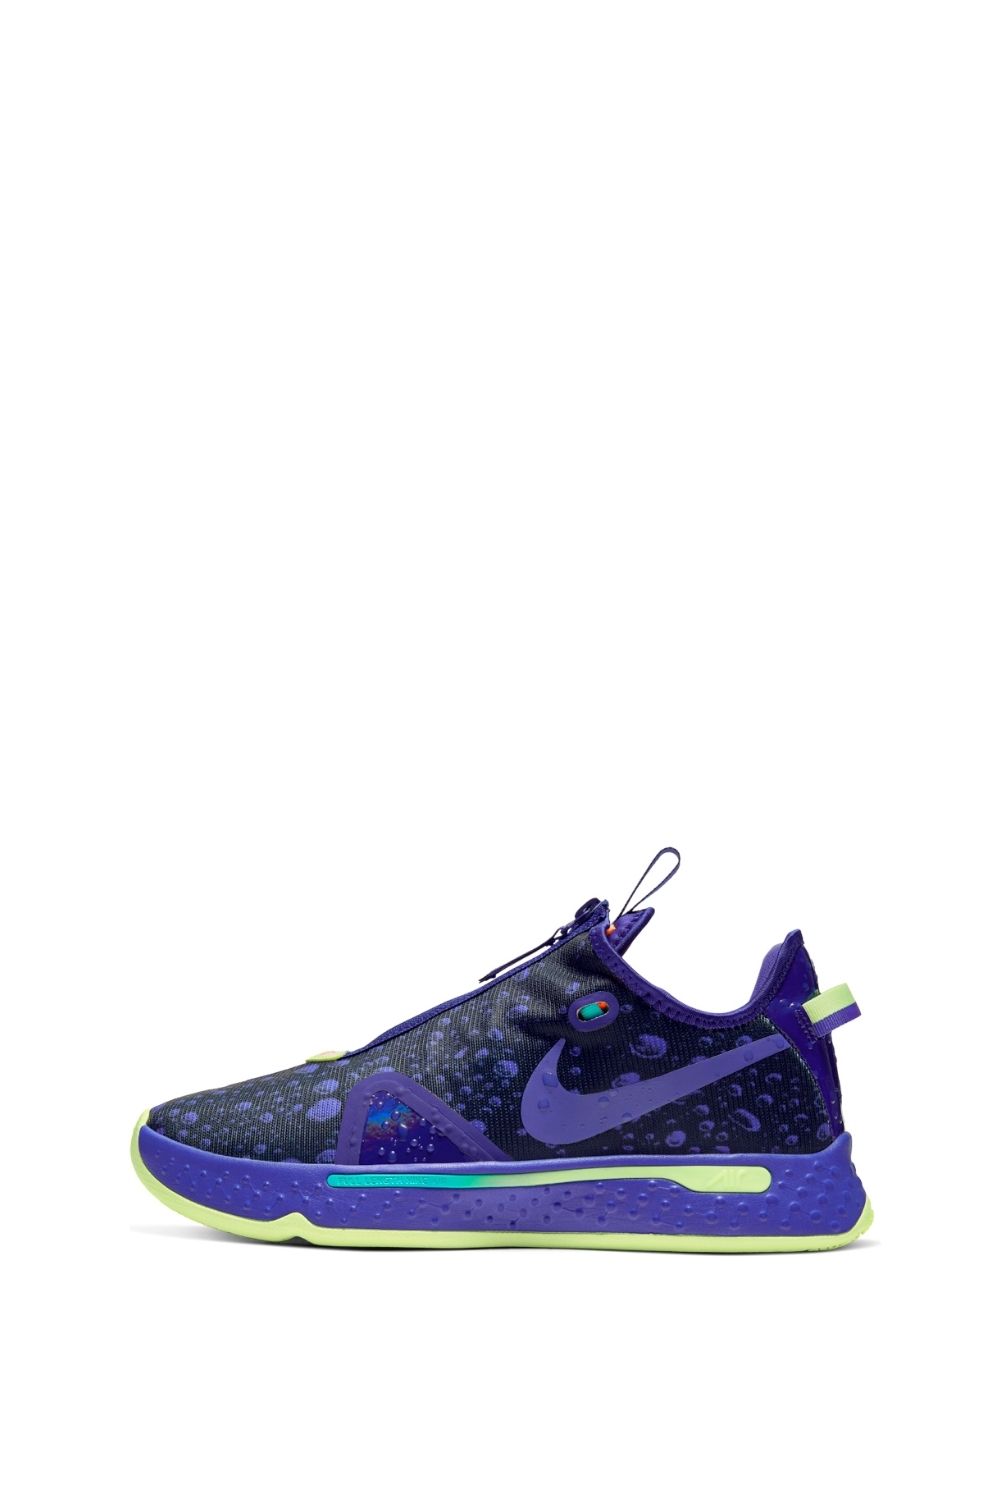 Ανδρικά/Παπούτσια/Αθλητικά/Basketball NIKE - Ανδρικά παπούτσια basketball NIKE PG 4 G μοβ